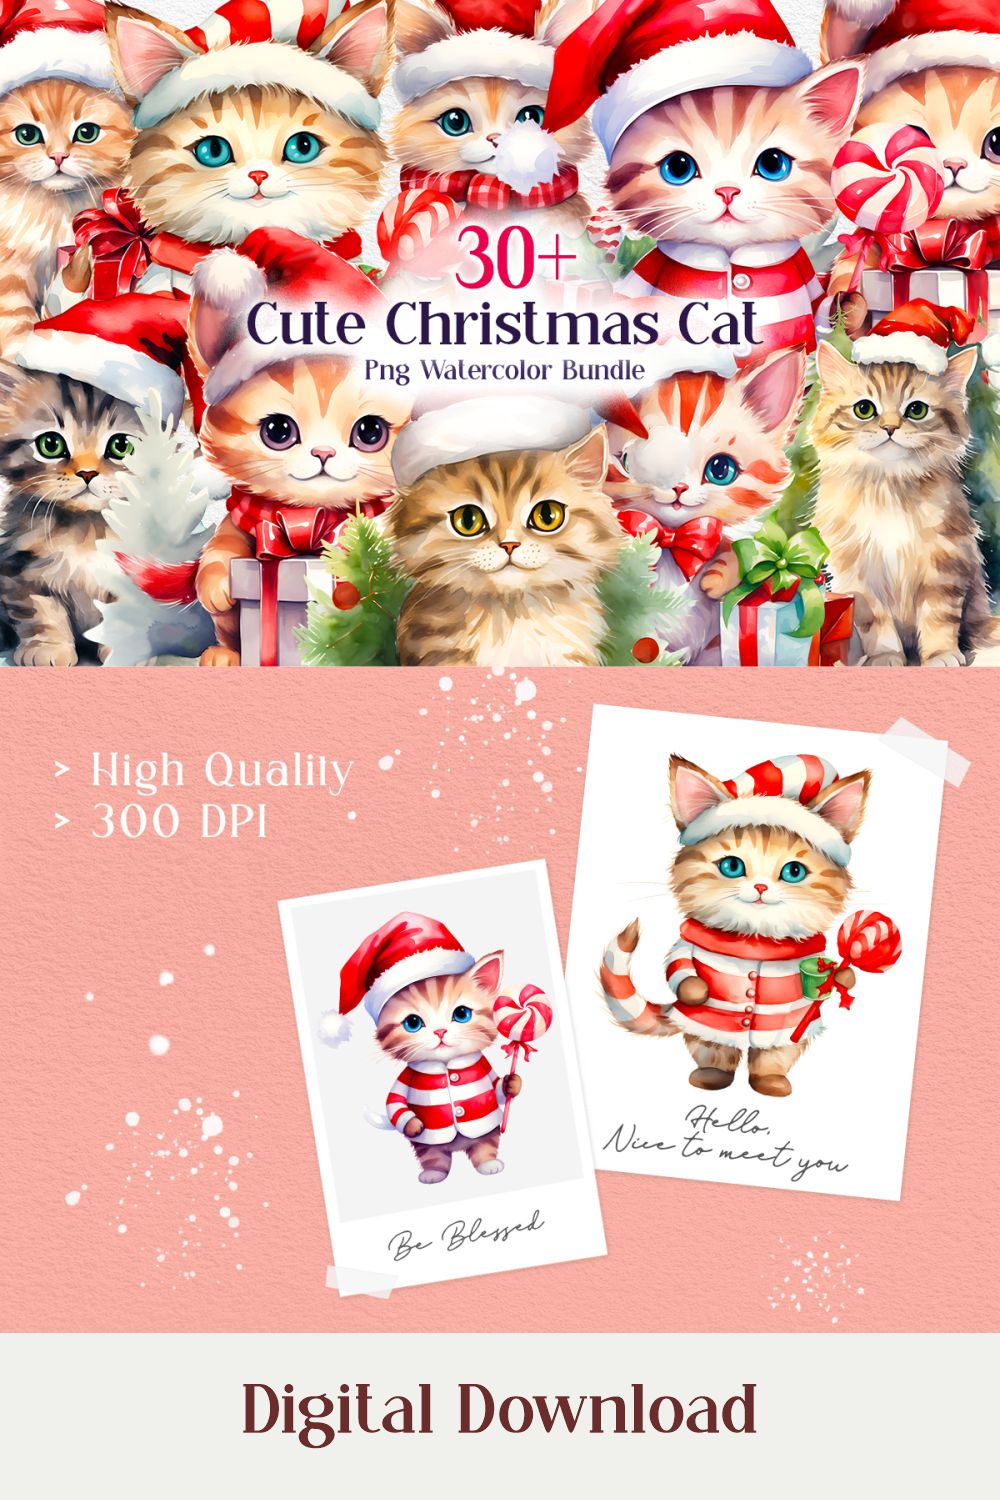 Cute Christmas Cat Sublimation Bundle, Cute Christmas Cat Clipart Watercolor pinterest preview image.